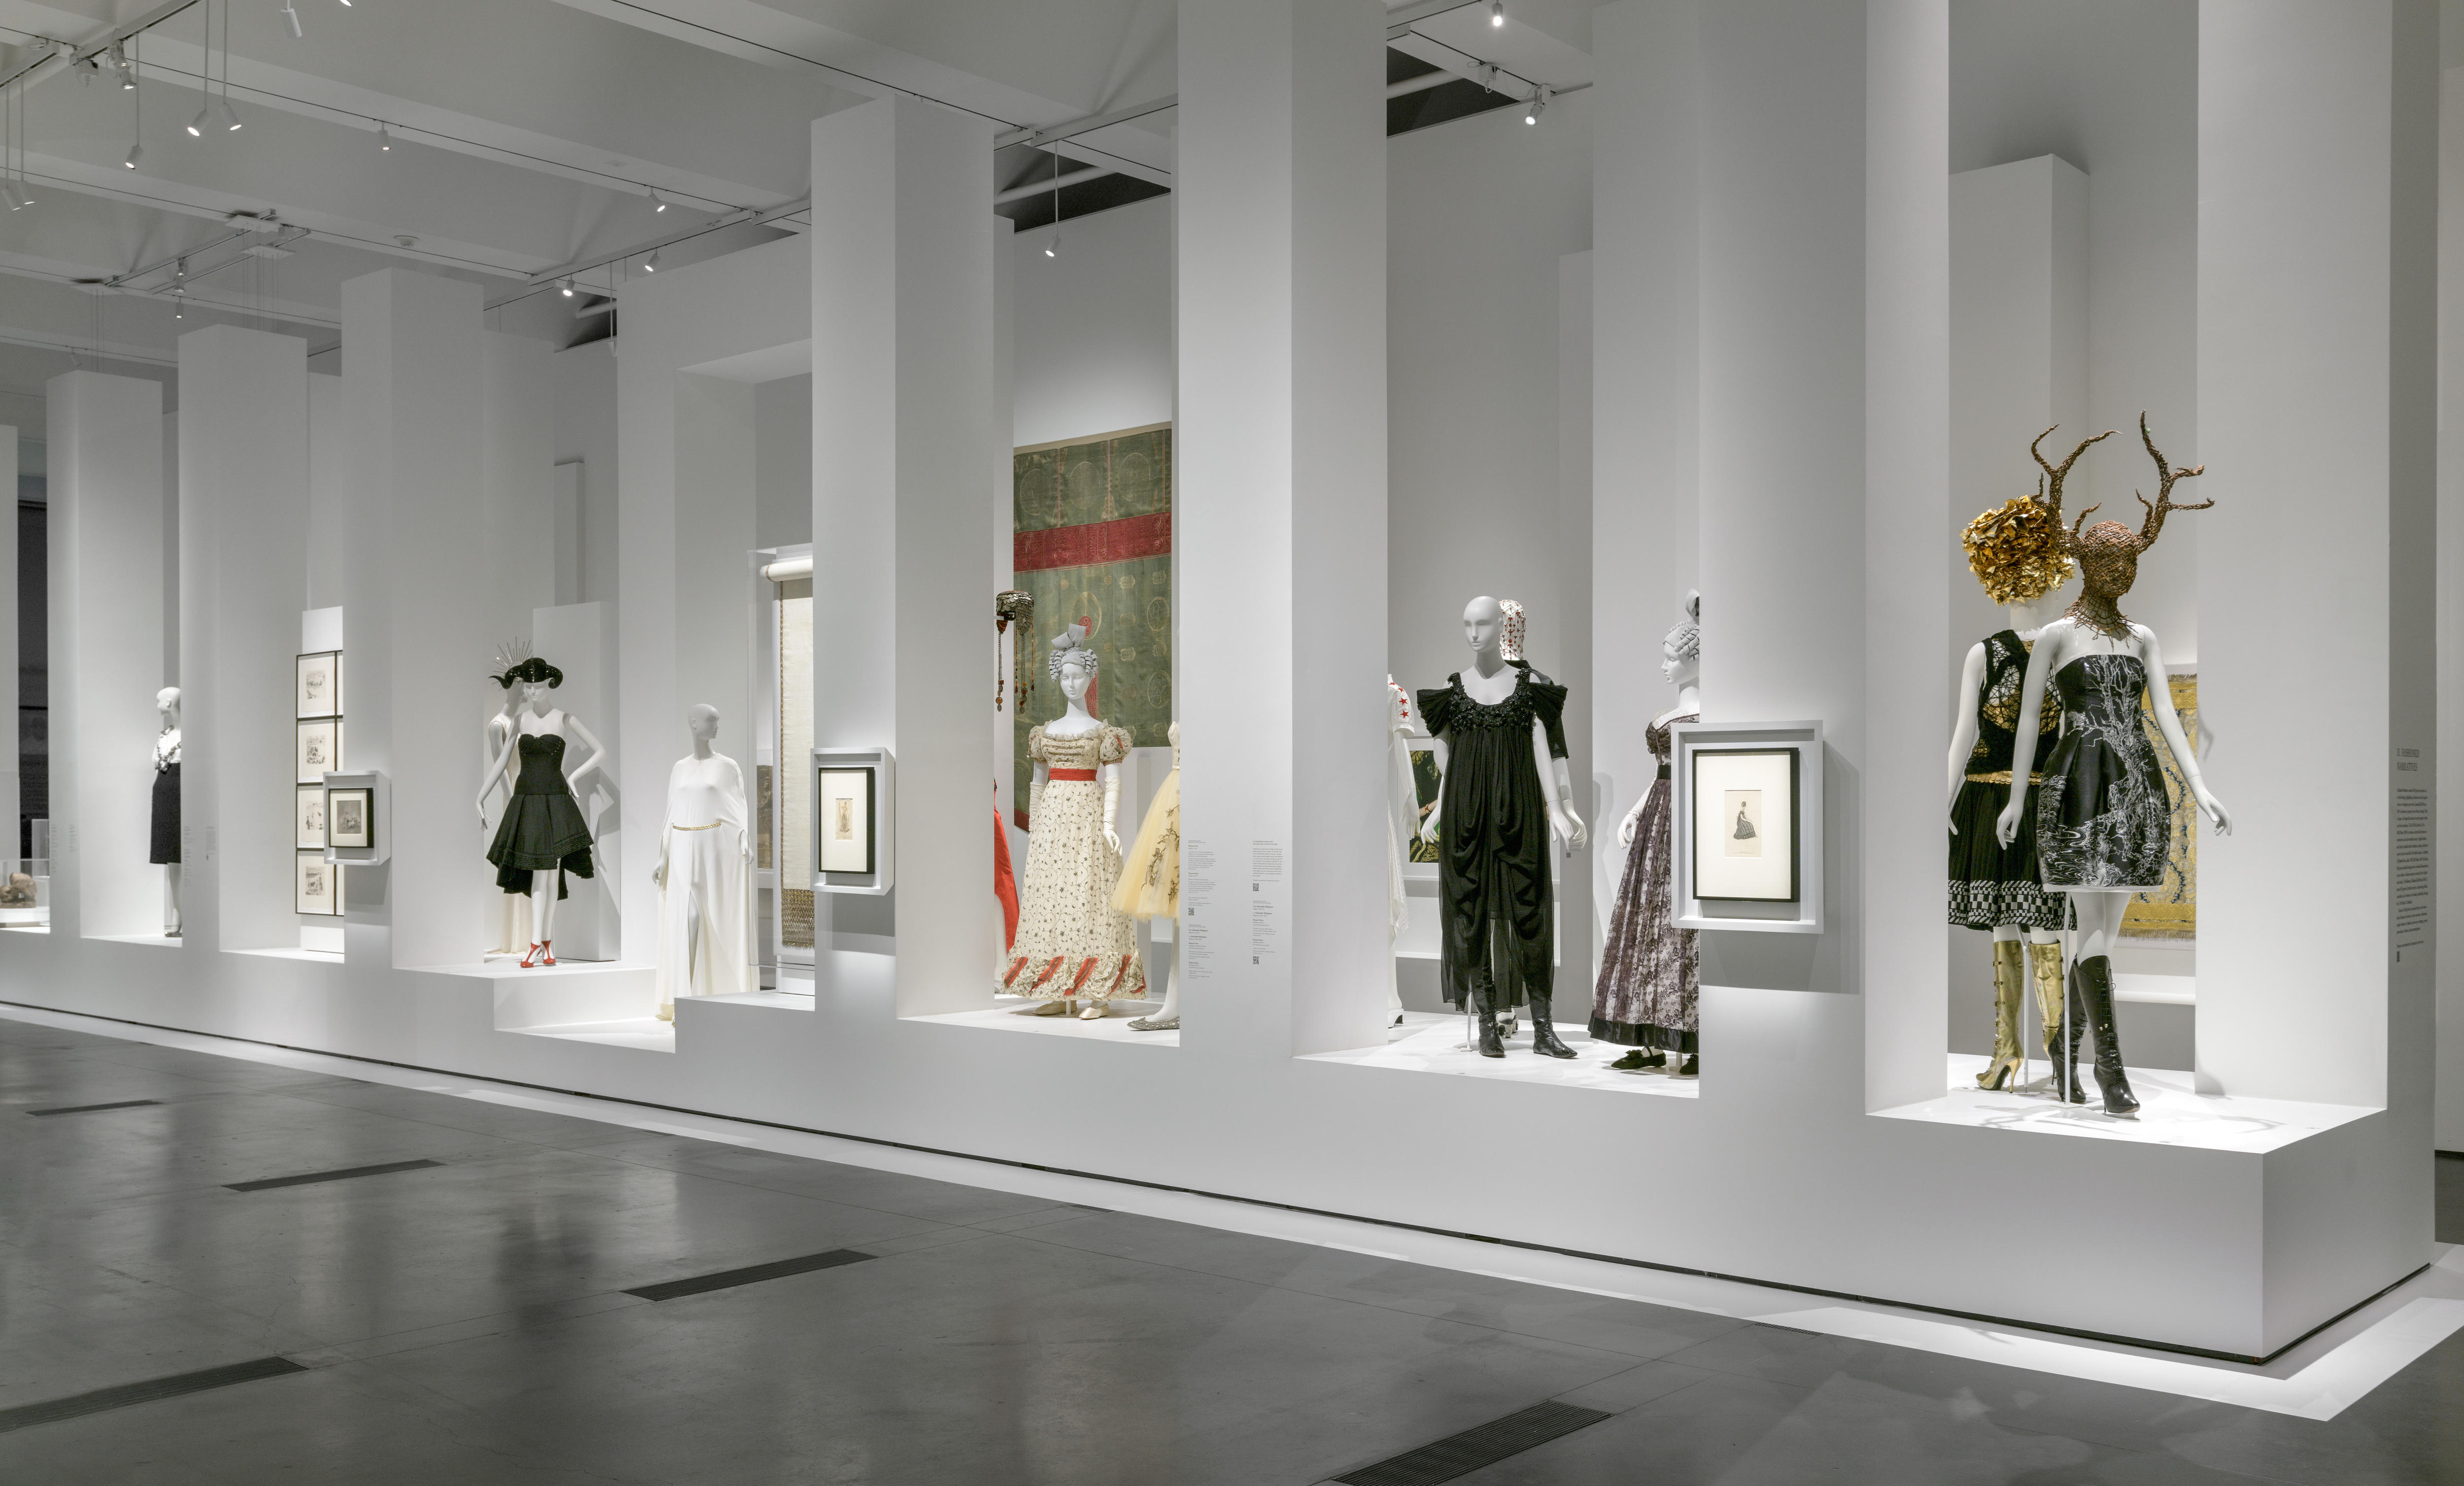 Într-un spațiu de galerie se află o serie de manechine, care poartă rochii extravagante, cizme și căciuli